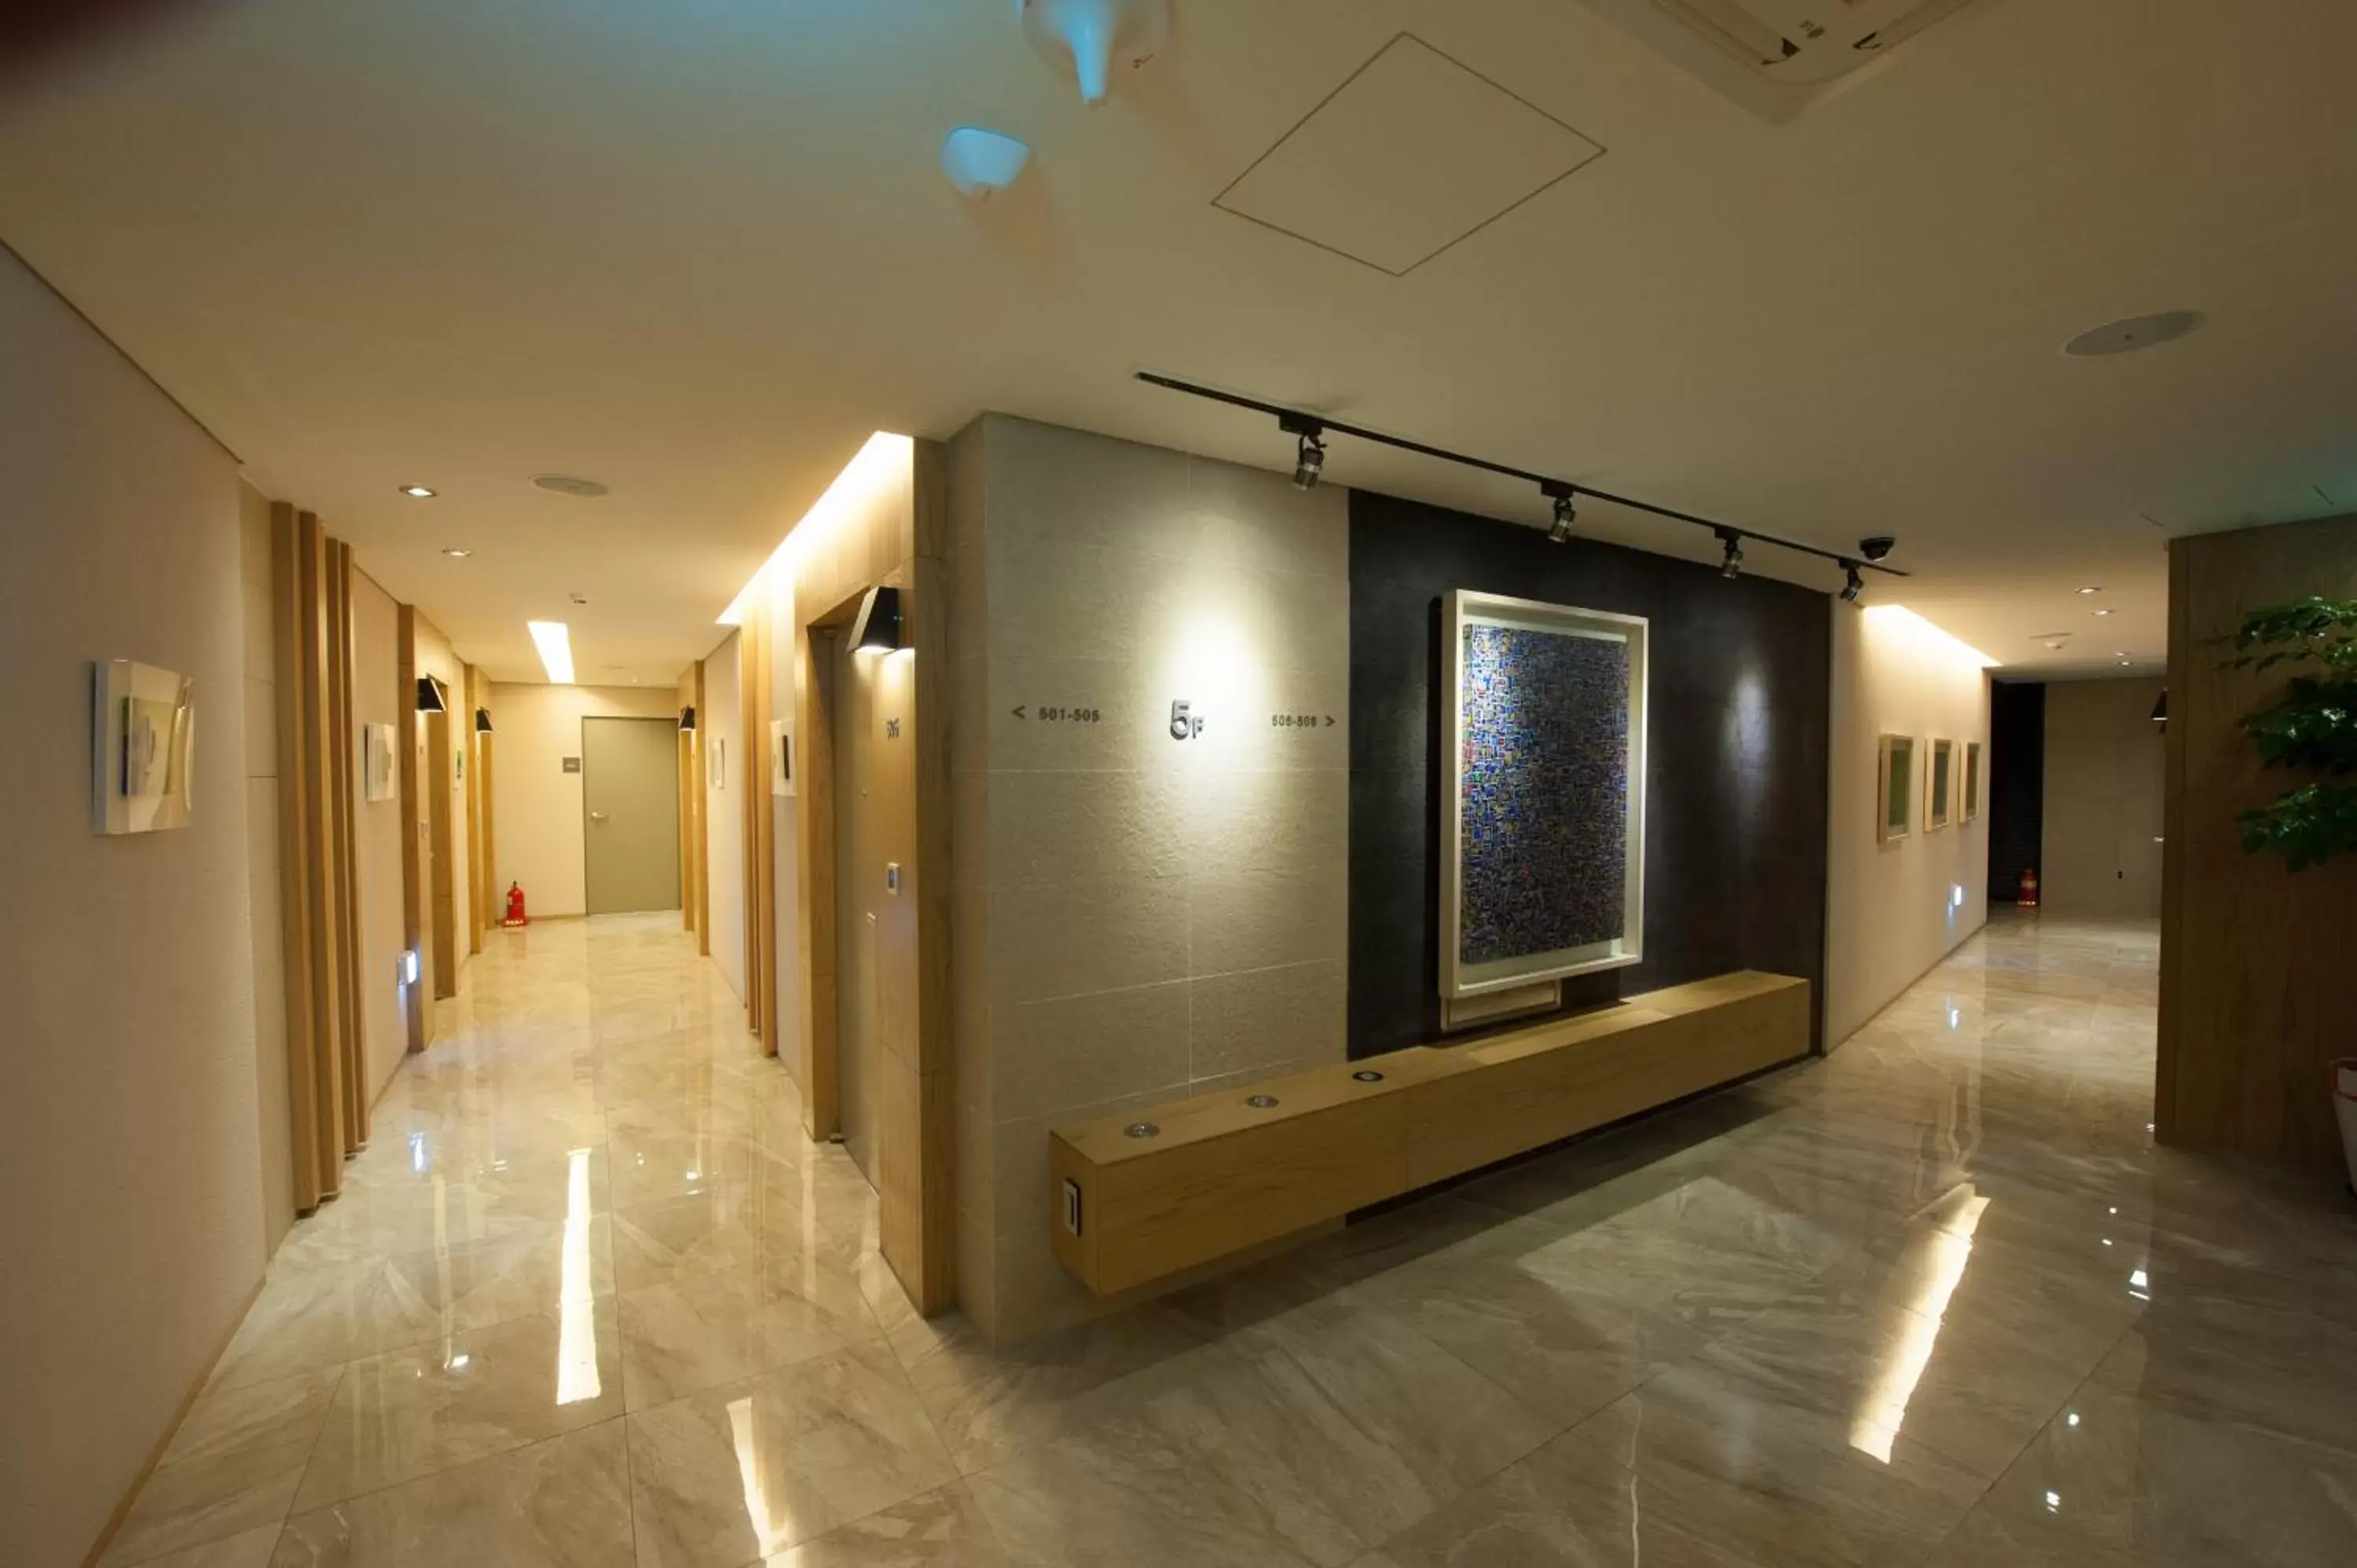 Lobby or reception in Rian Hotel